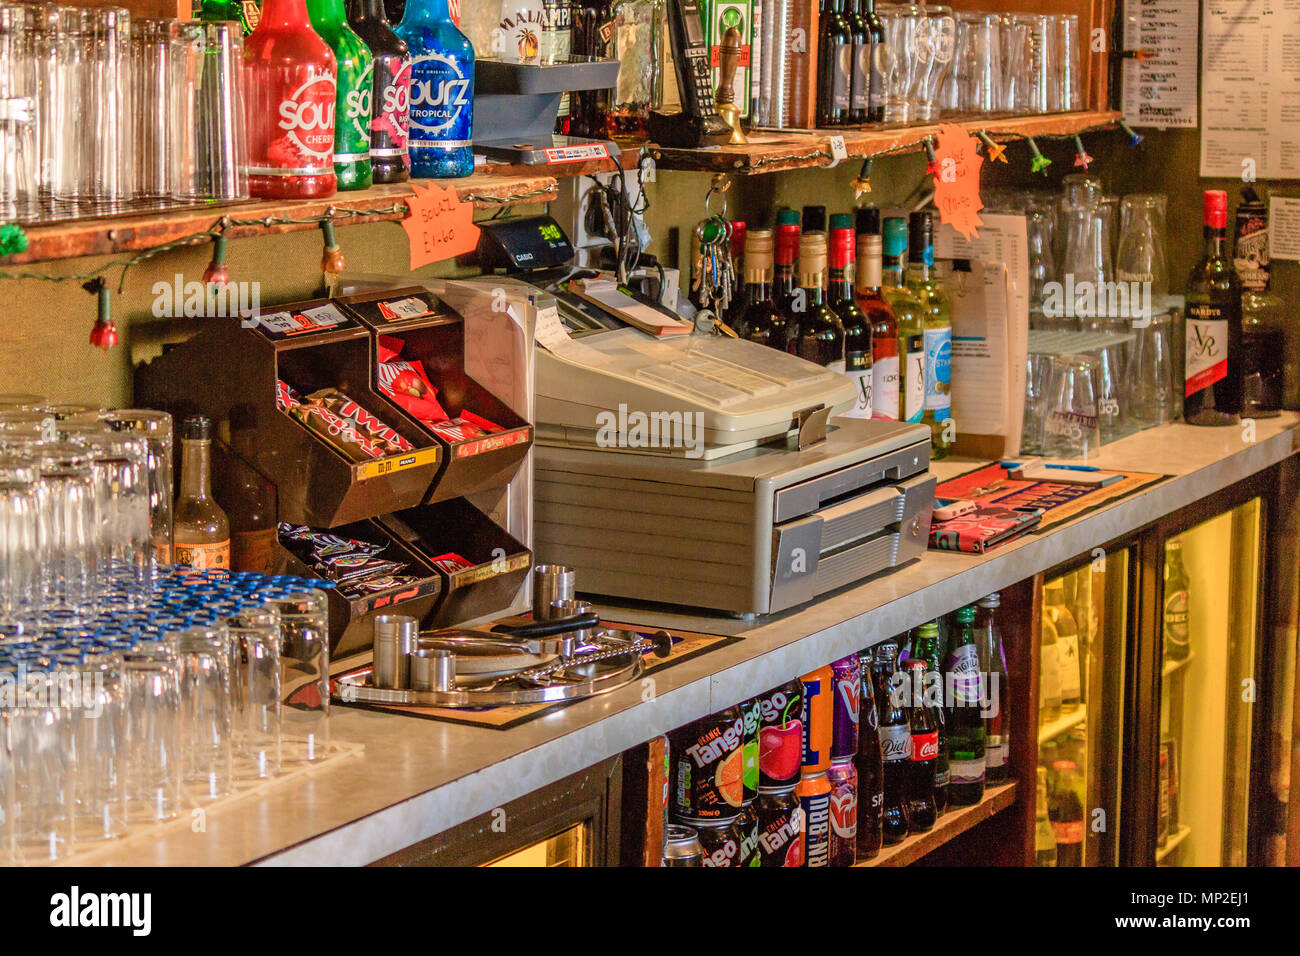 Schokolade, Spirituosen und Wein auf der Anzeige mit einem bis hinter einer typischen Pub Bar Hotel begegnen. Teignmouth, Devon. Feb 2018. Stockfoto